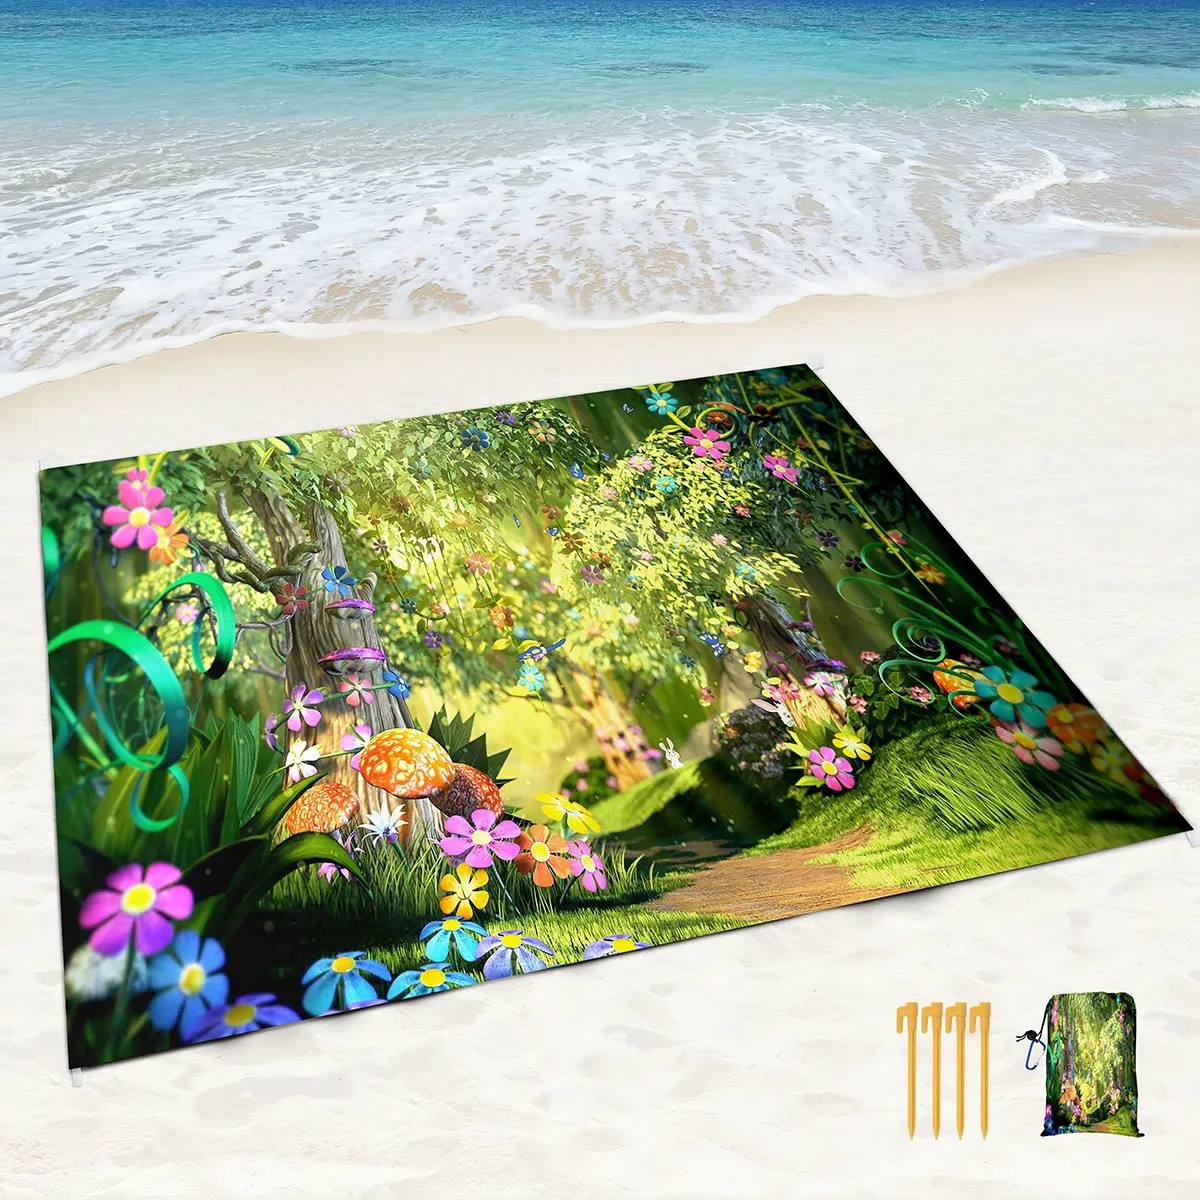 Bellissima coperta da spiaggia da giardino a terra impermeabile, tappetino da picnic portatile leggero, perfetto per viaggi all'aperto, campeggio, escursioni